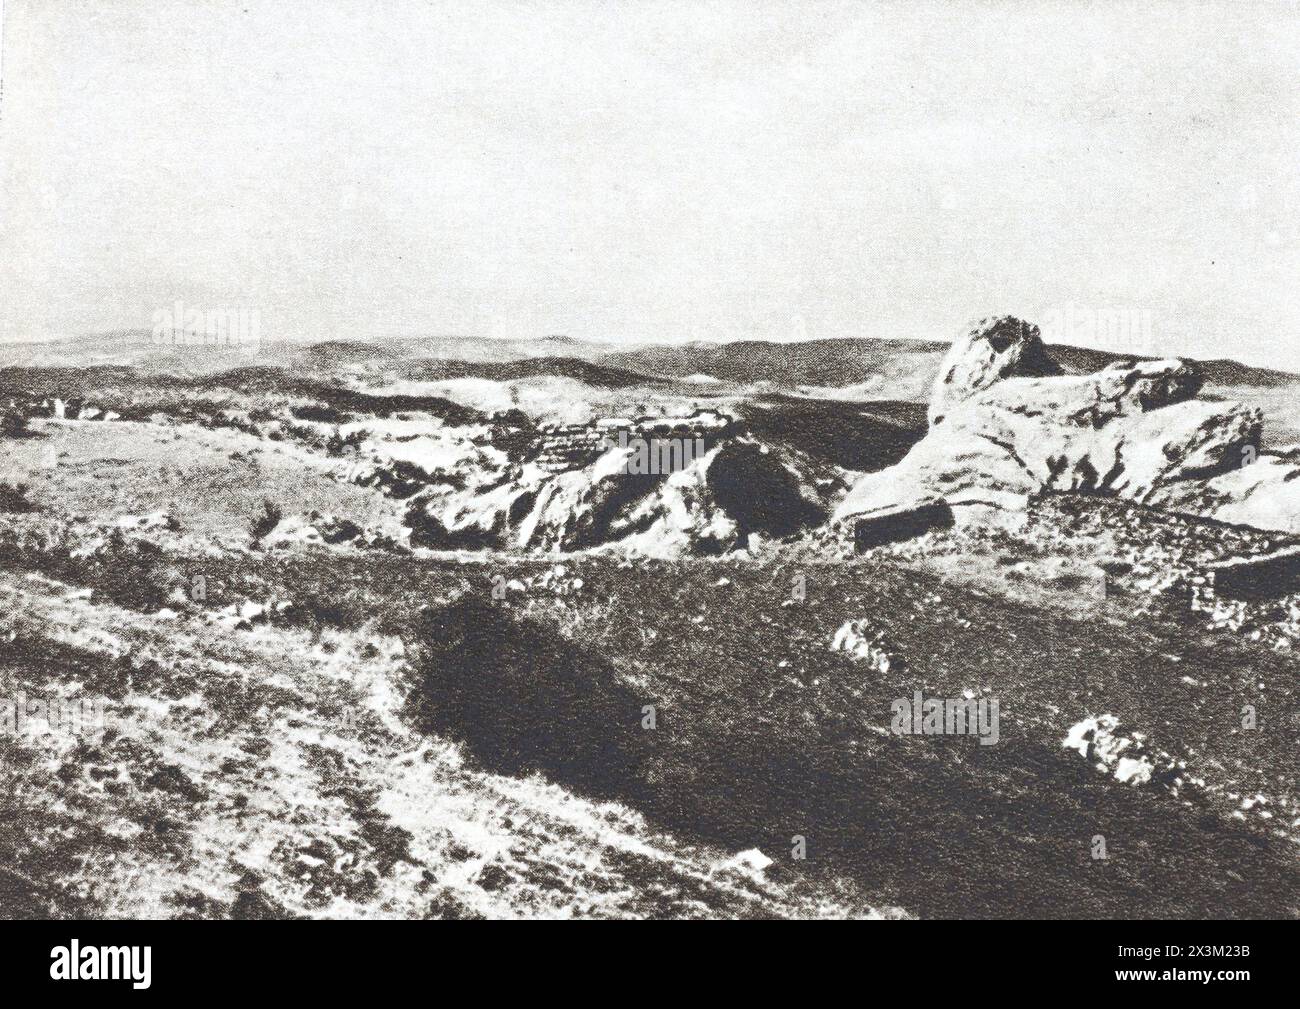 Le rovine dell'antica capitale ittita, la città di Hattusash. Foto della metà del XX secolo. Foto Stock